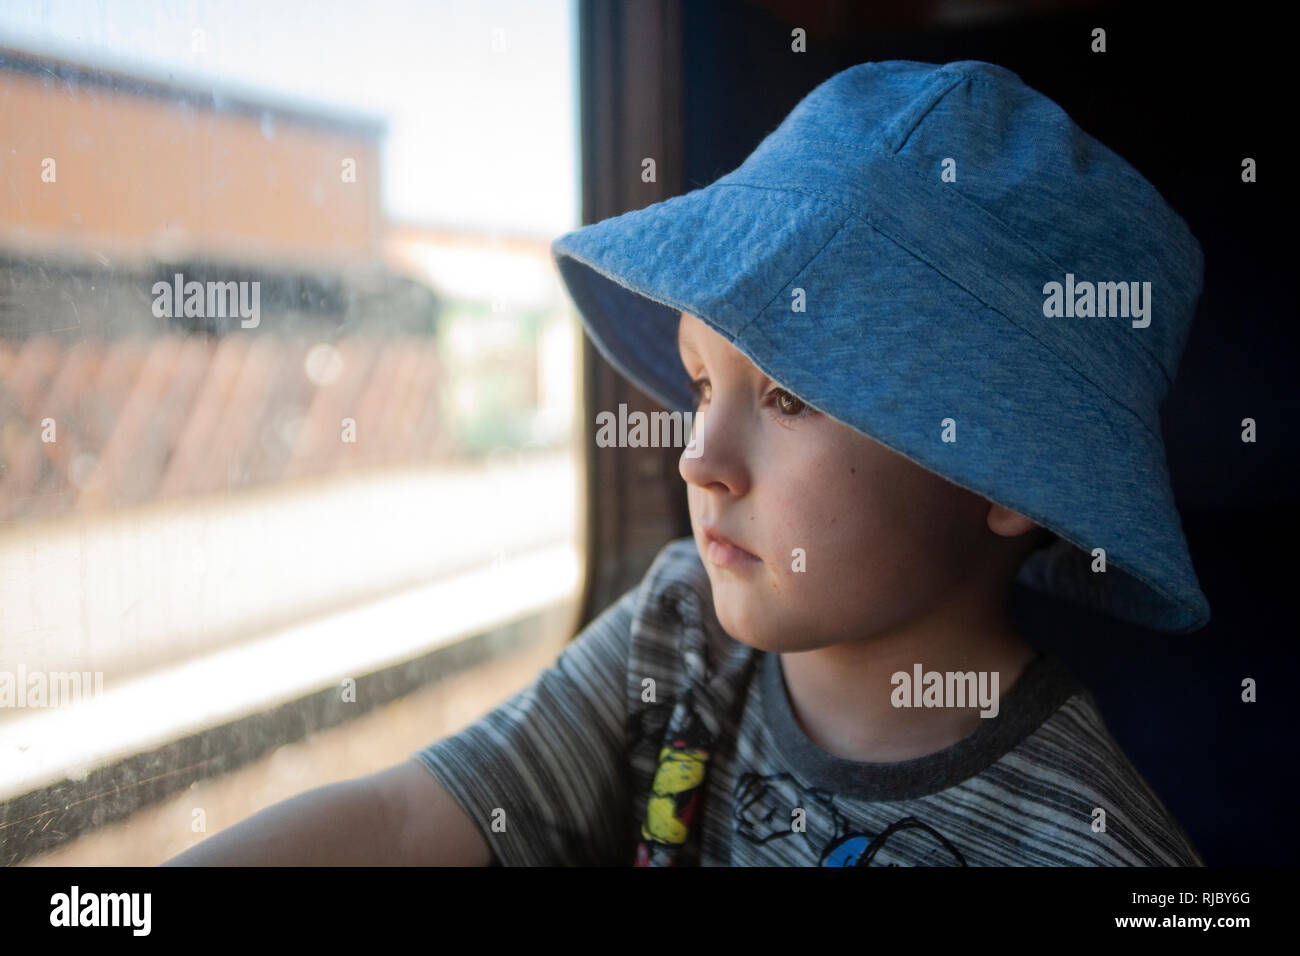 Ein kleiner Junge mit Engelsgesicht, der mit einem blauen Hut verziert ist, fesselt die Reise mit Wunderaugen und blickt aus dem Zugfenster. Stockfoto